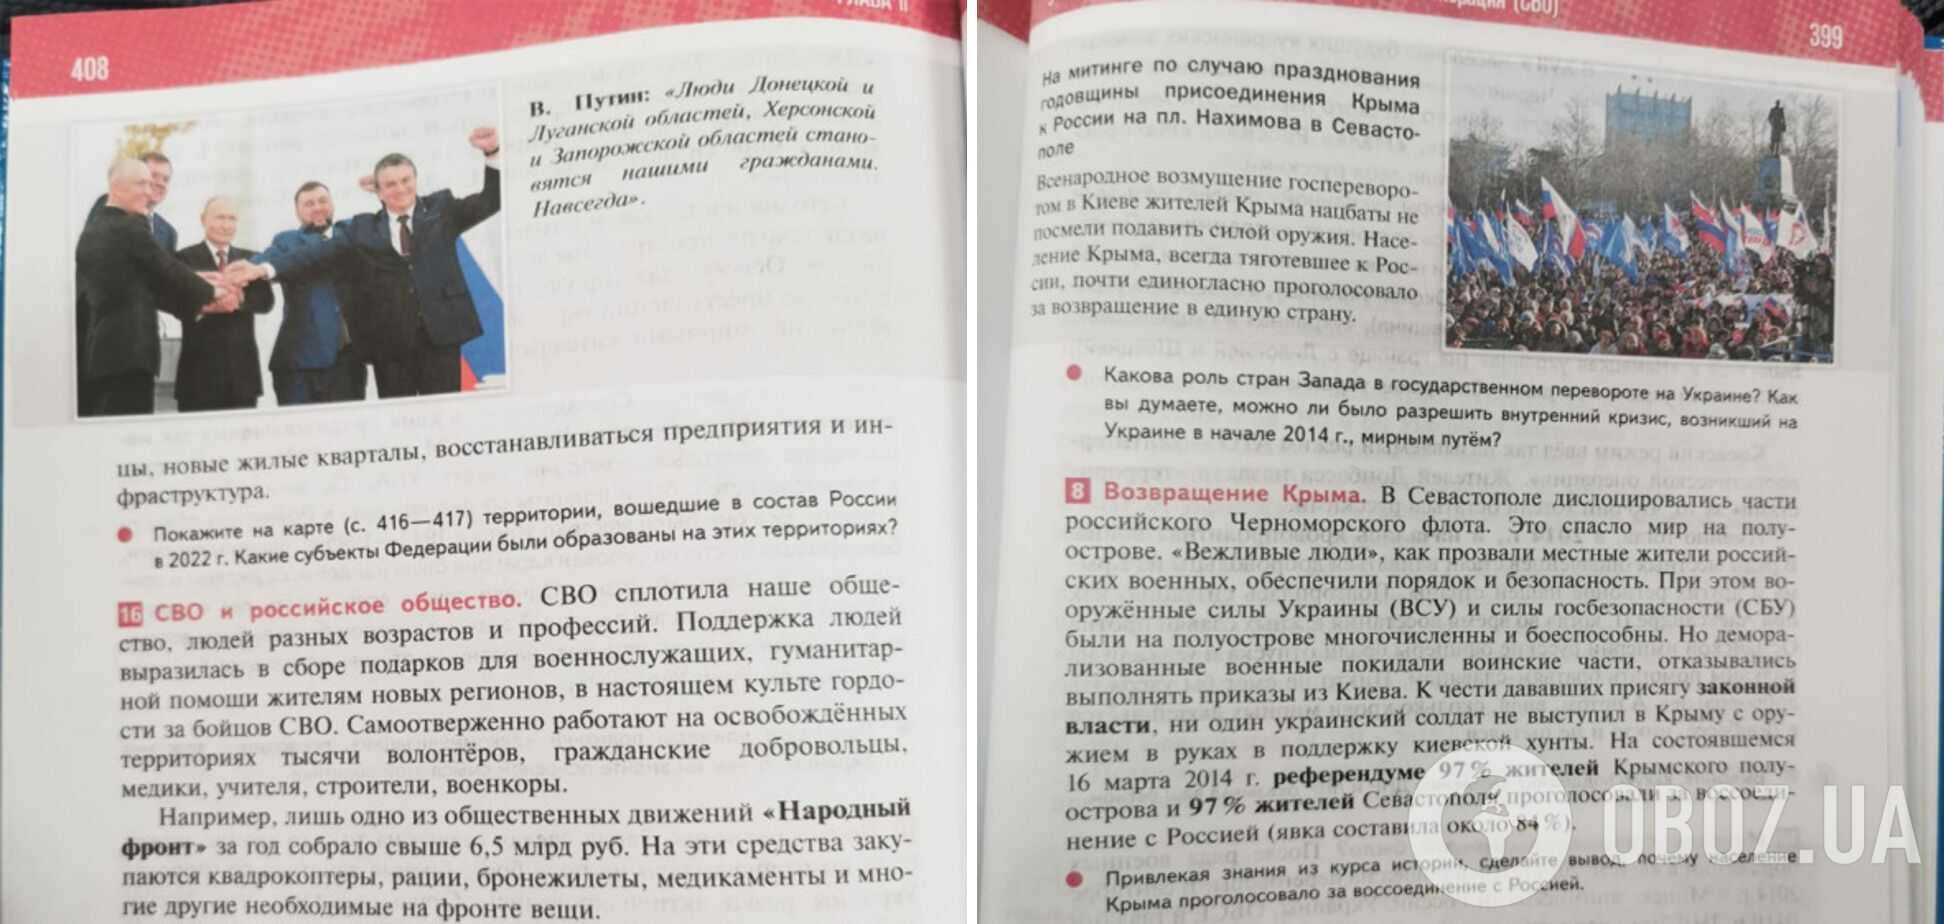 В России переписали 50 лет истории: в новых учебниках много страниц посвятили Украине